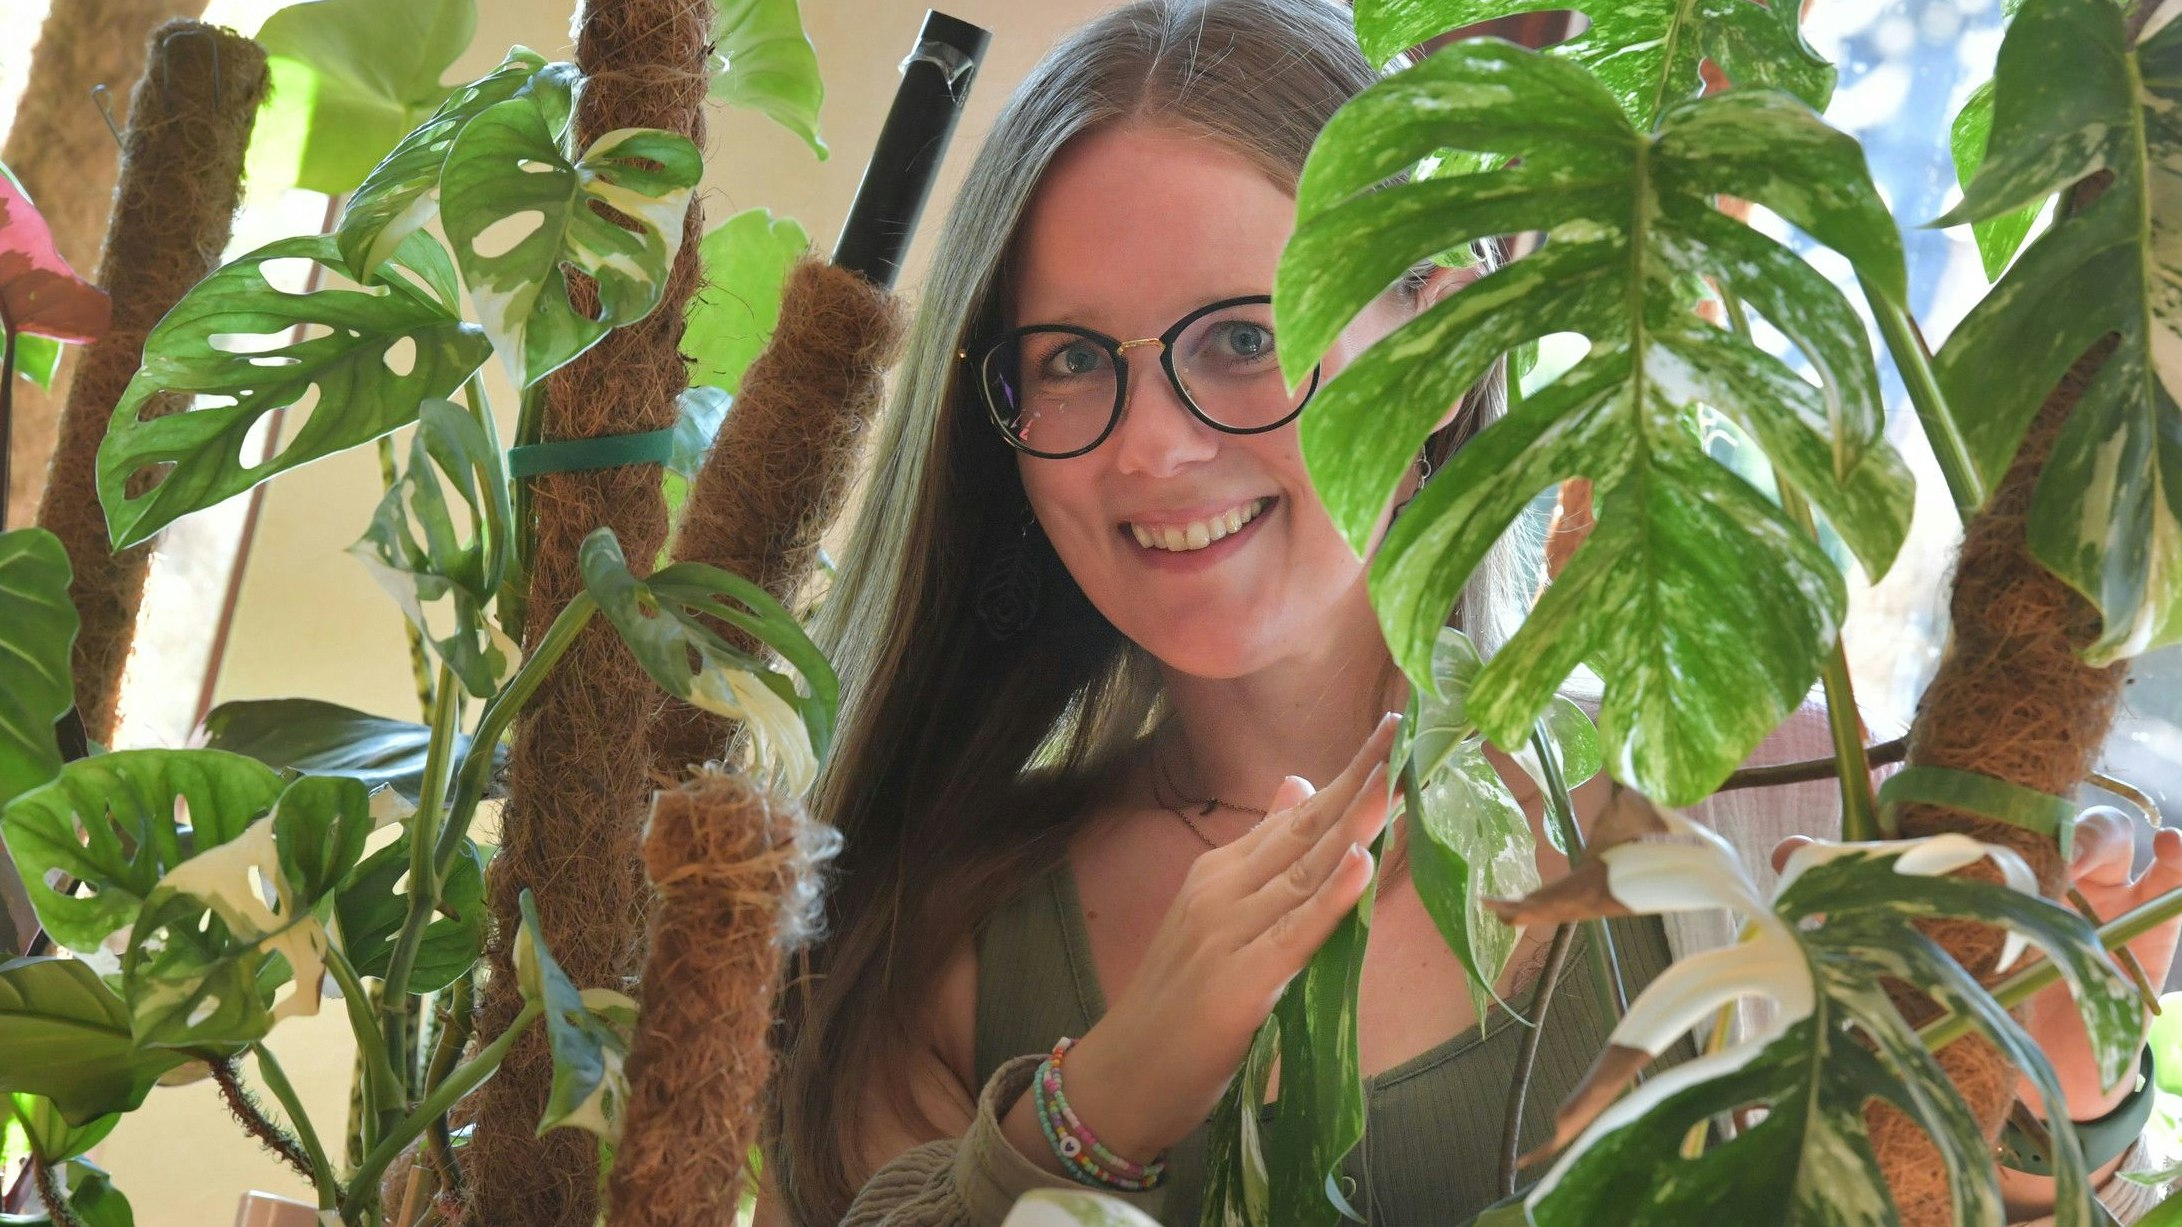 Alisha Ukena aus Barßel ist durch die Corona-Pandemie auf Zimmerpflanzen gekommen. Seitdem verwandelt sich ihre Wohnung in einen Dschungel. Foto: Ortgies